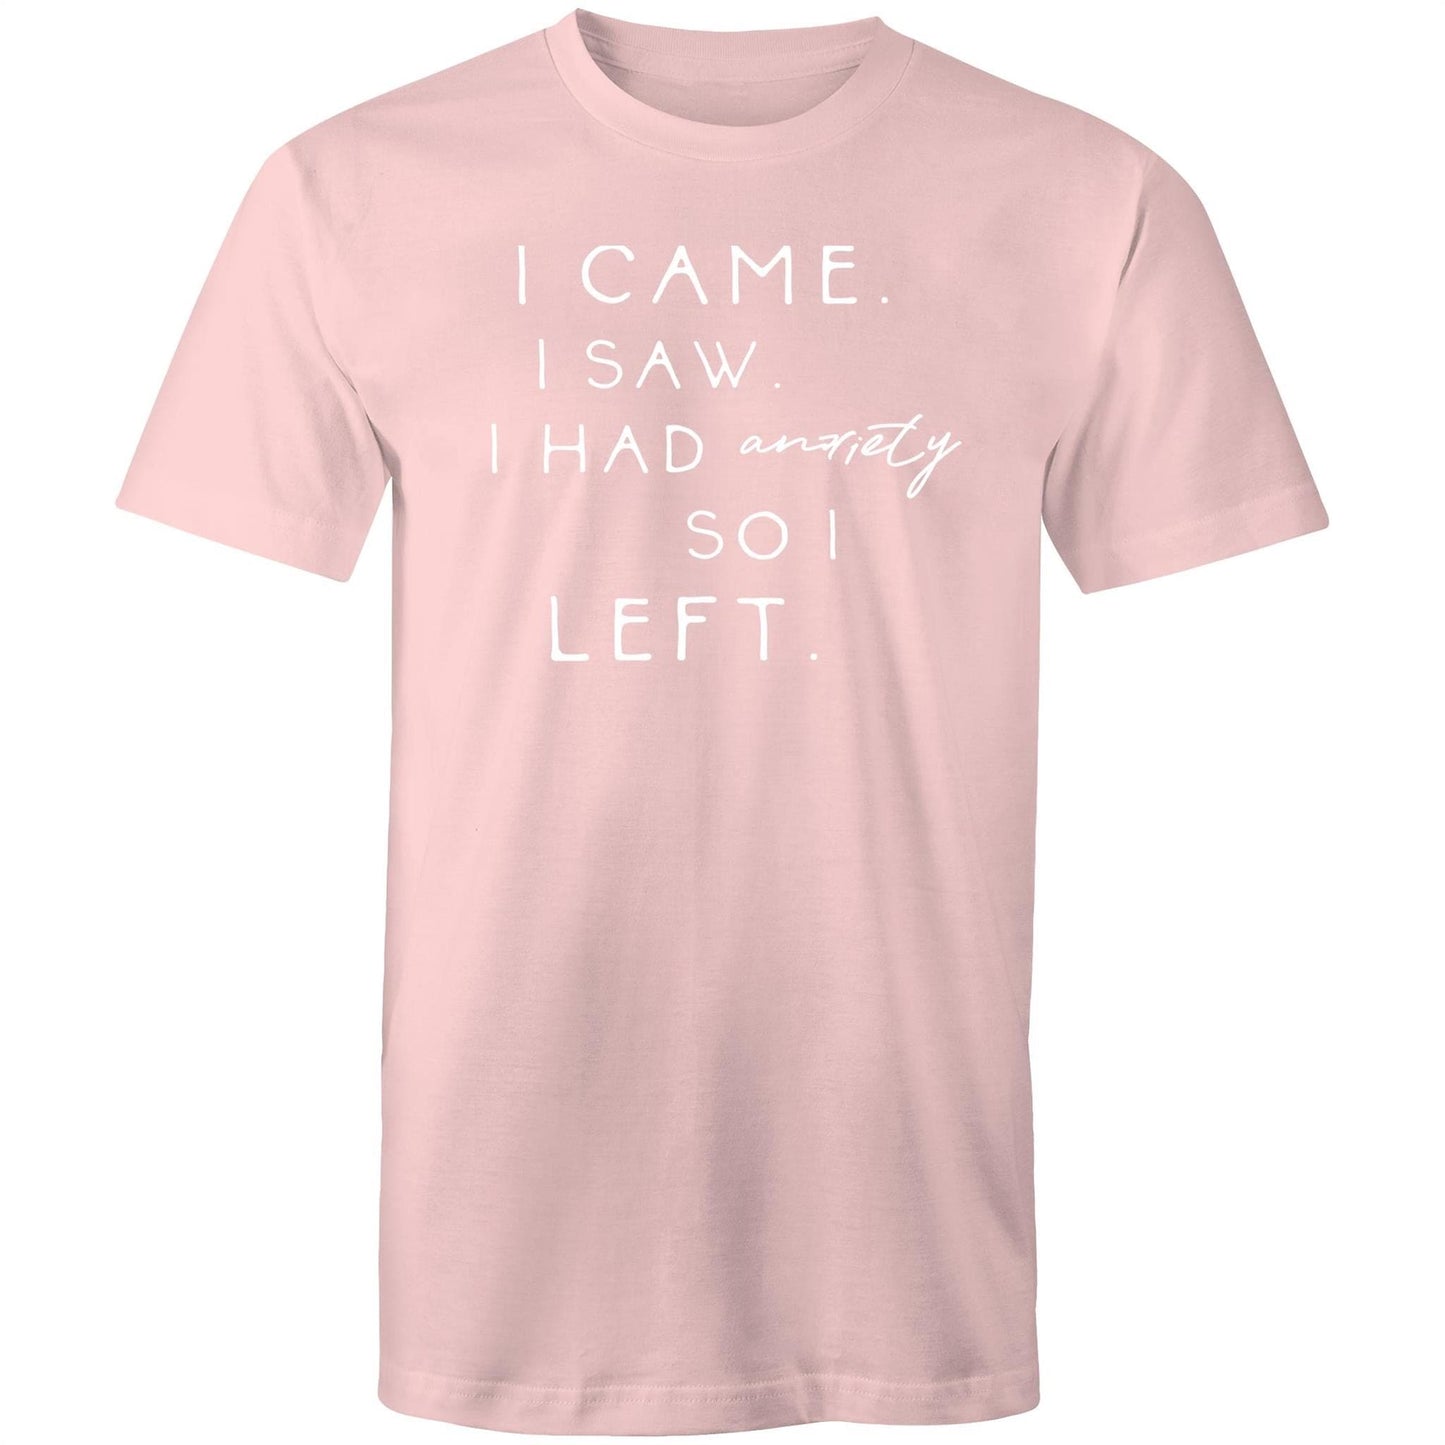 Mens T-Shirt - I came I saw I had anxiety